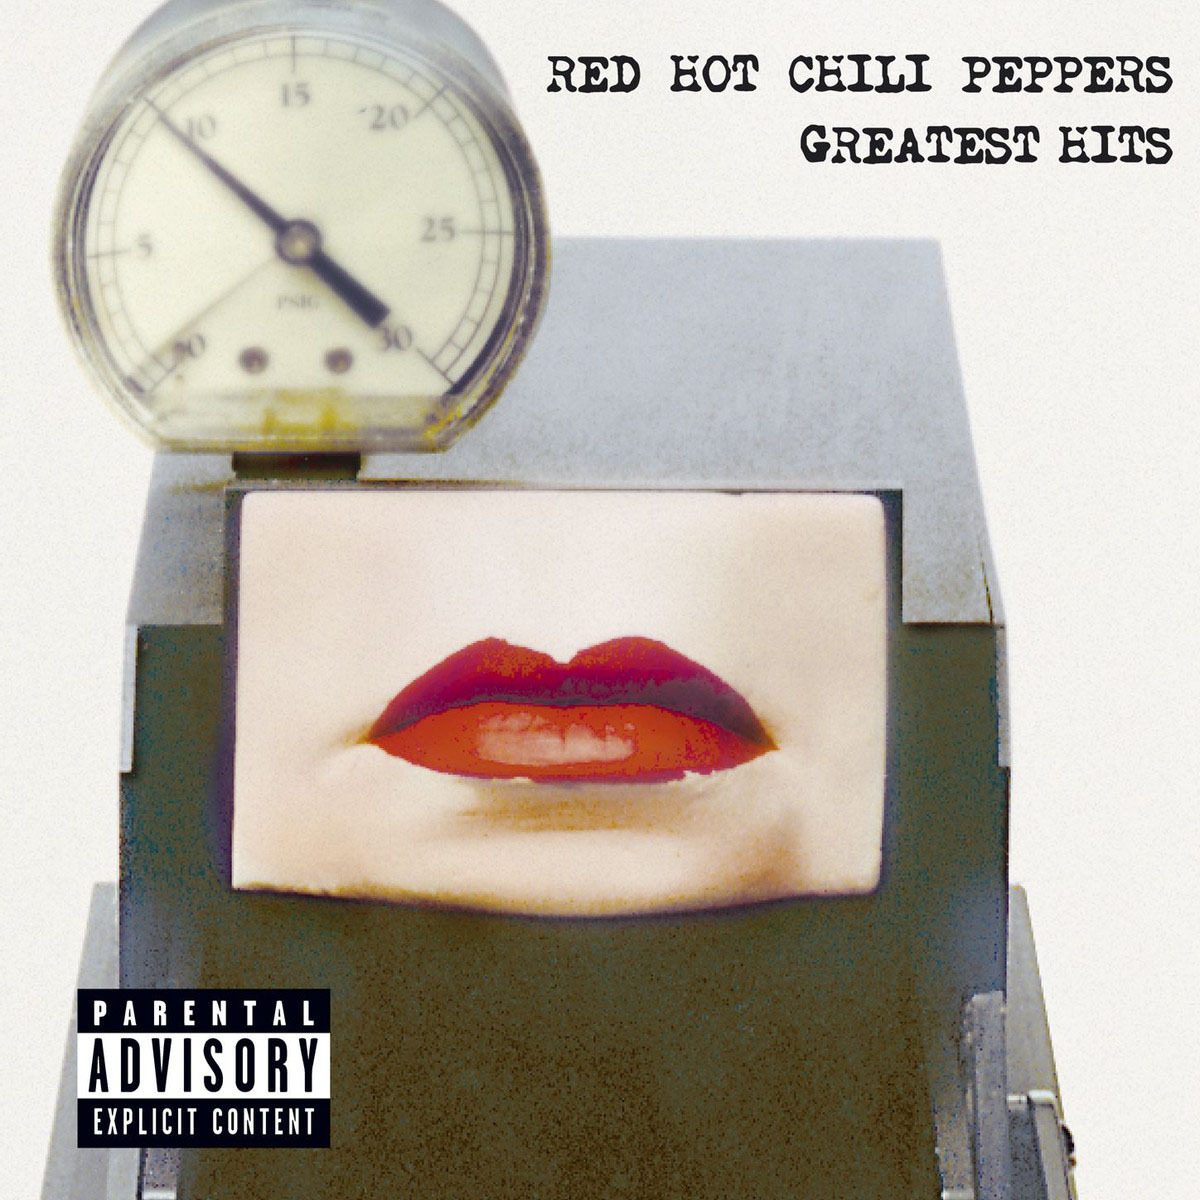 RED HOT CHILI PEPPERS (レッド・ホット・チリ・ペッパーズ) 2003年のベストアルバム『Greatest Hits (グレイテスト・ヒッツ』高画質ジャケット画像